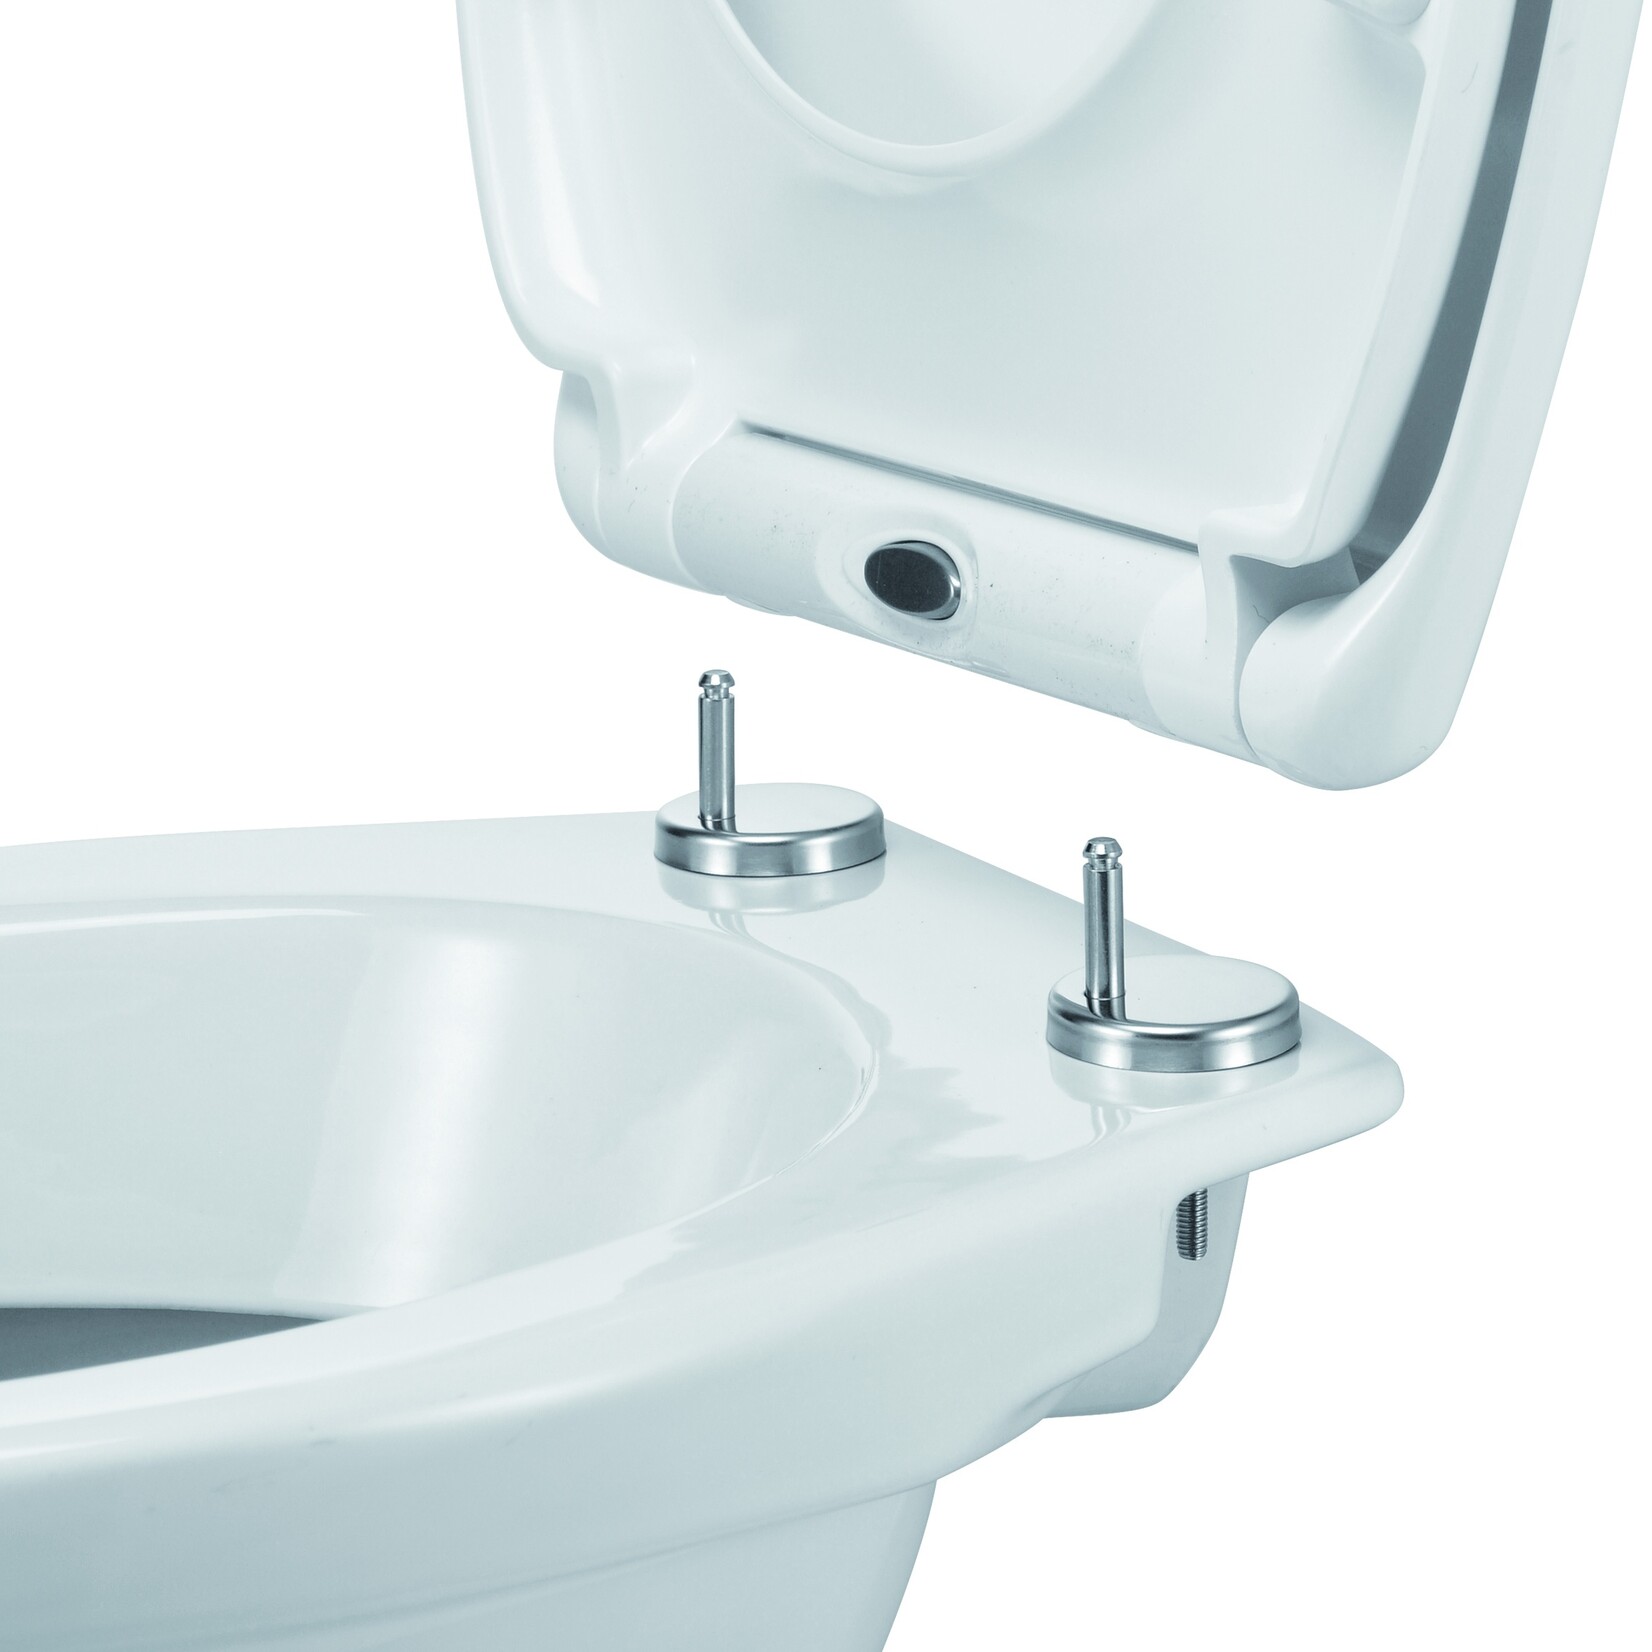 Haushalt Softclose WC Bril - Toiletbril met Snelle (de)montage